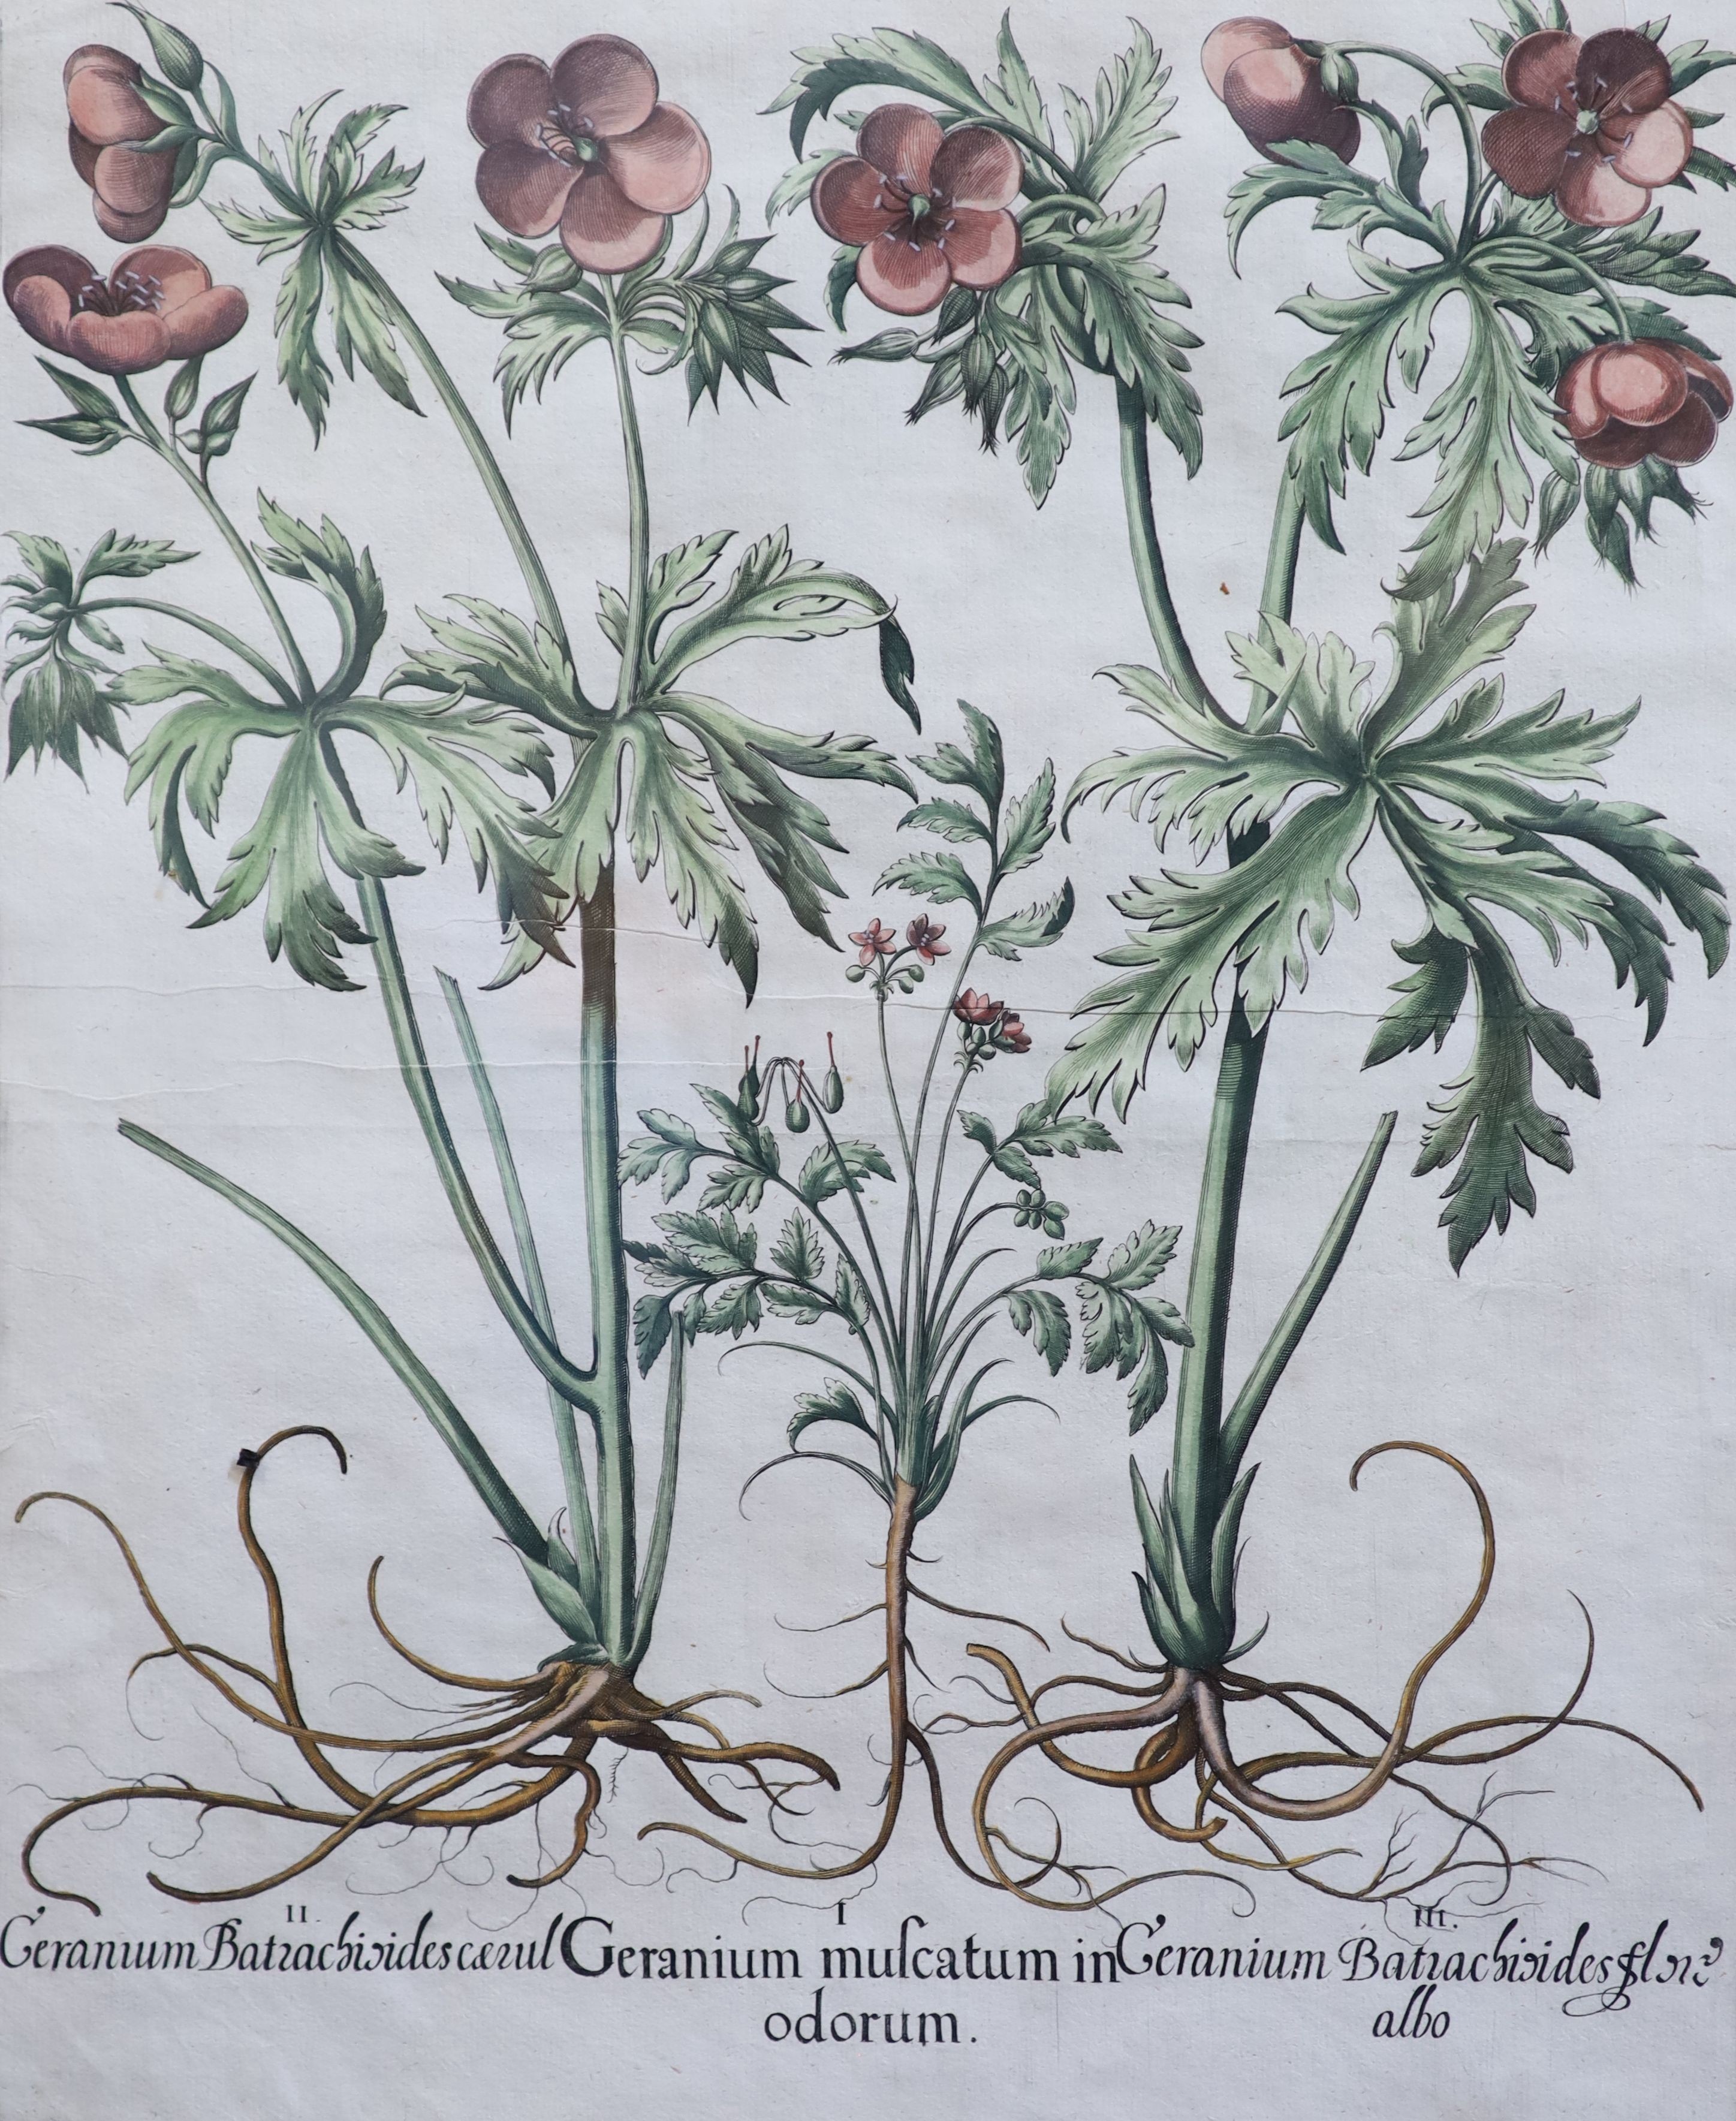 Basilius Baseler (1561-1629), Geranium Sangui narium, Geranium Muscatum in odorum, Geranium Sanguinarium maius and Geranium Muscatum odoratum from Hortus Eysettensis, four coloured engravings laid on paper, 49 x 41cm.